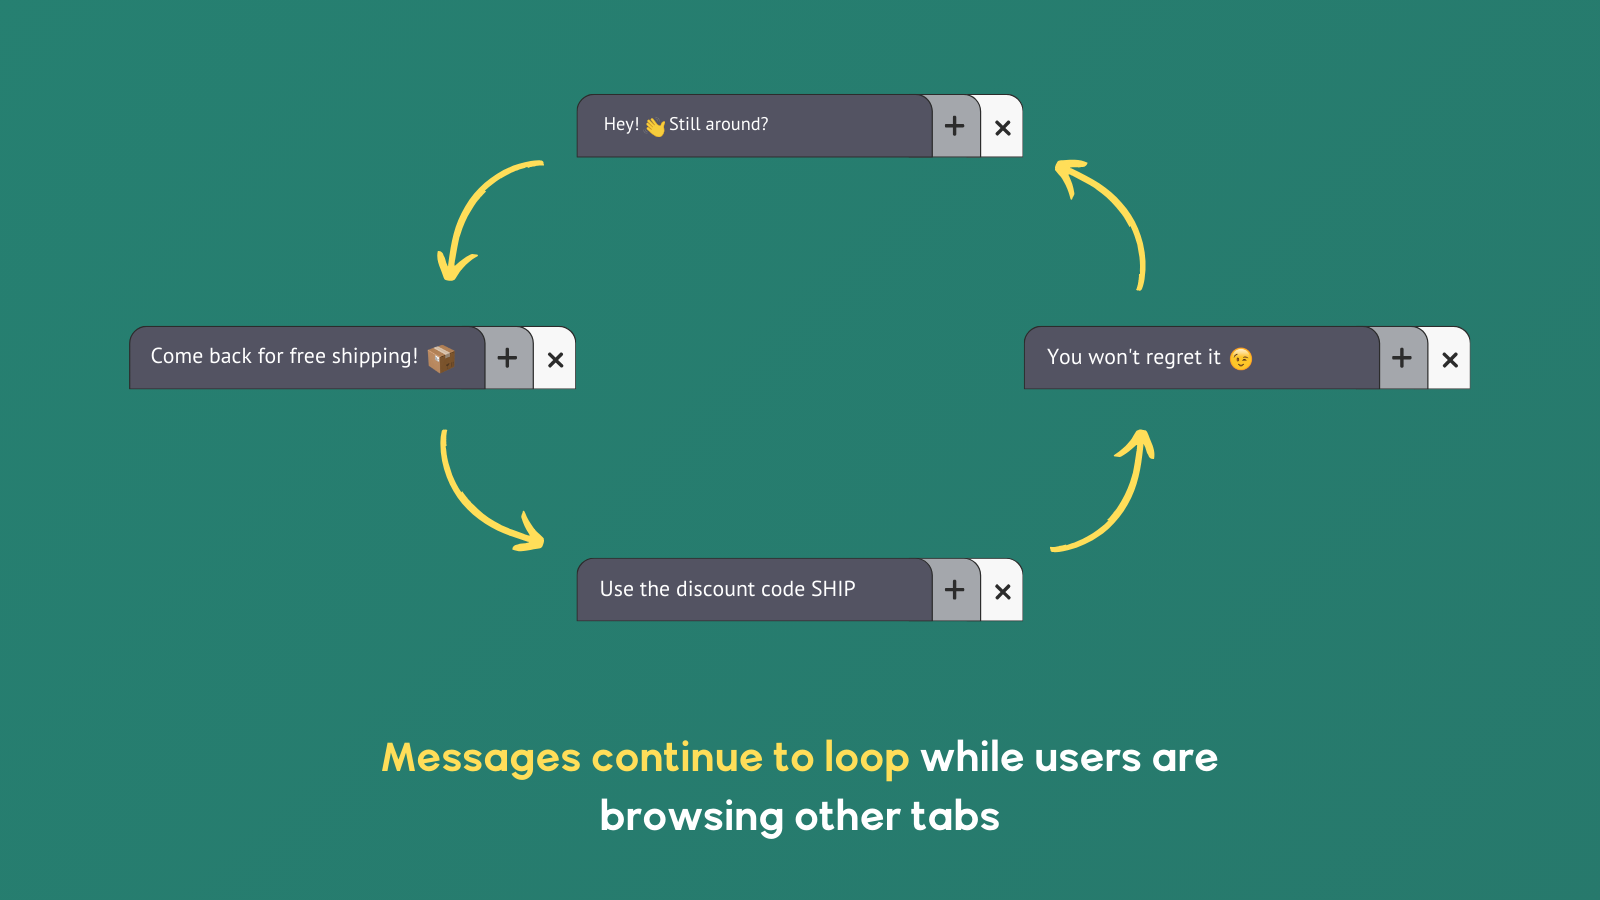 As mensagens continuam em loop enquanto os usuários estão navegando em outras abas